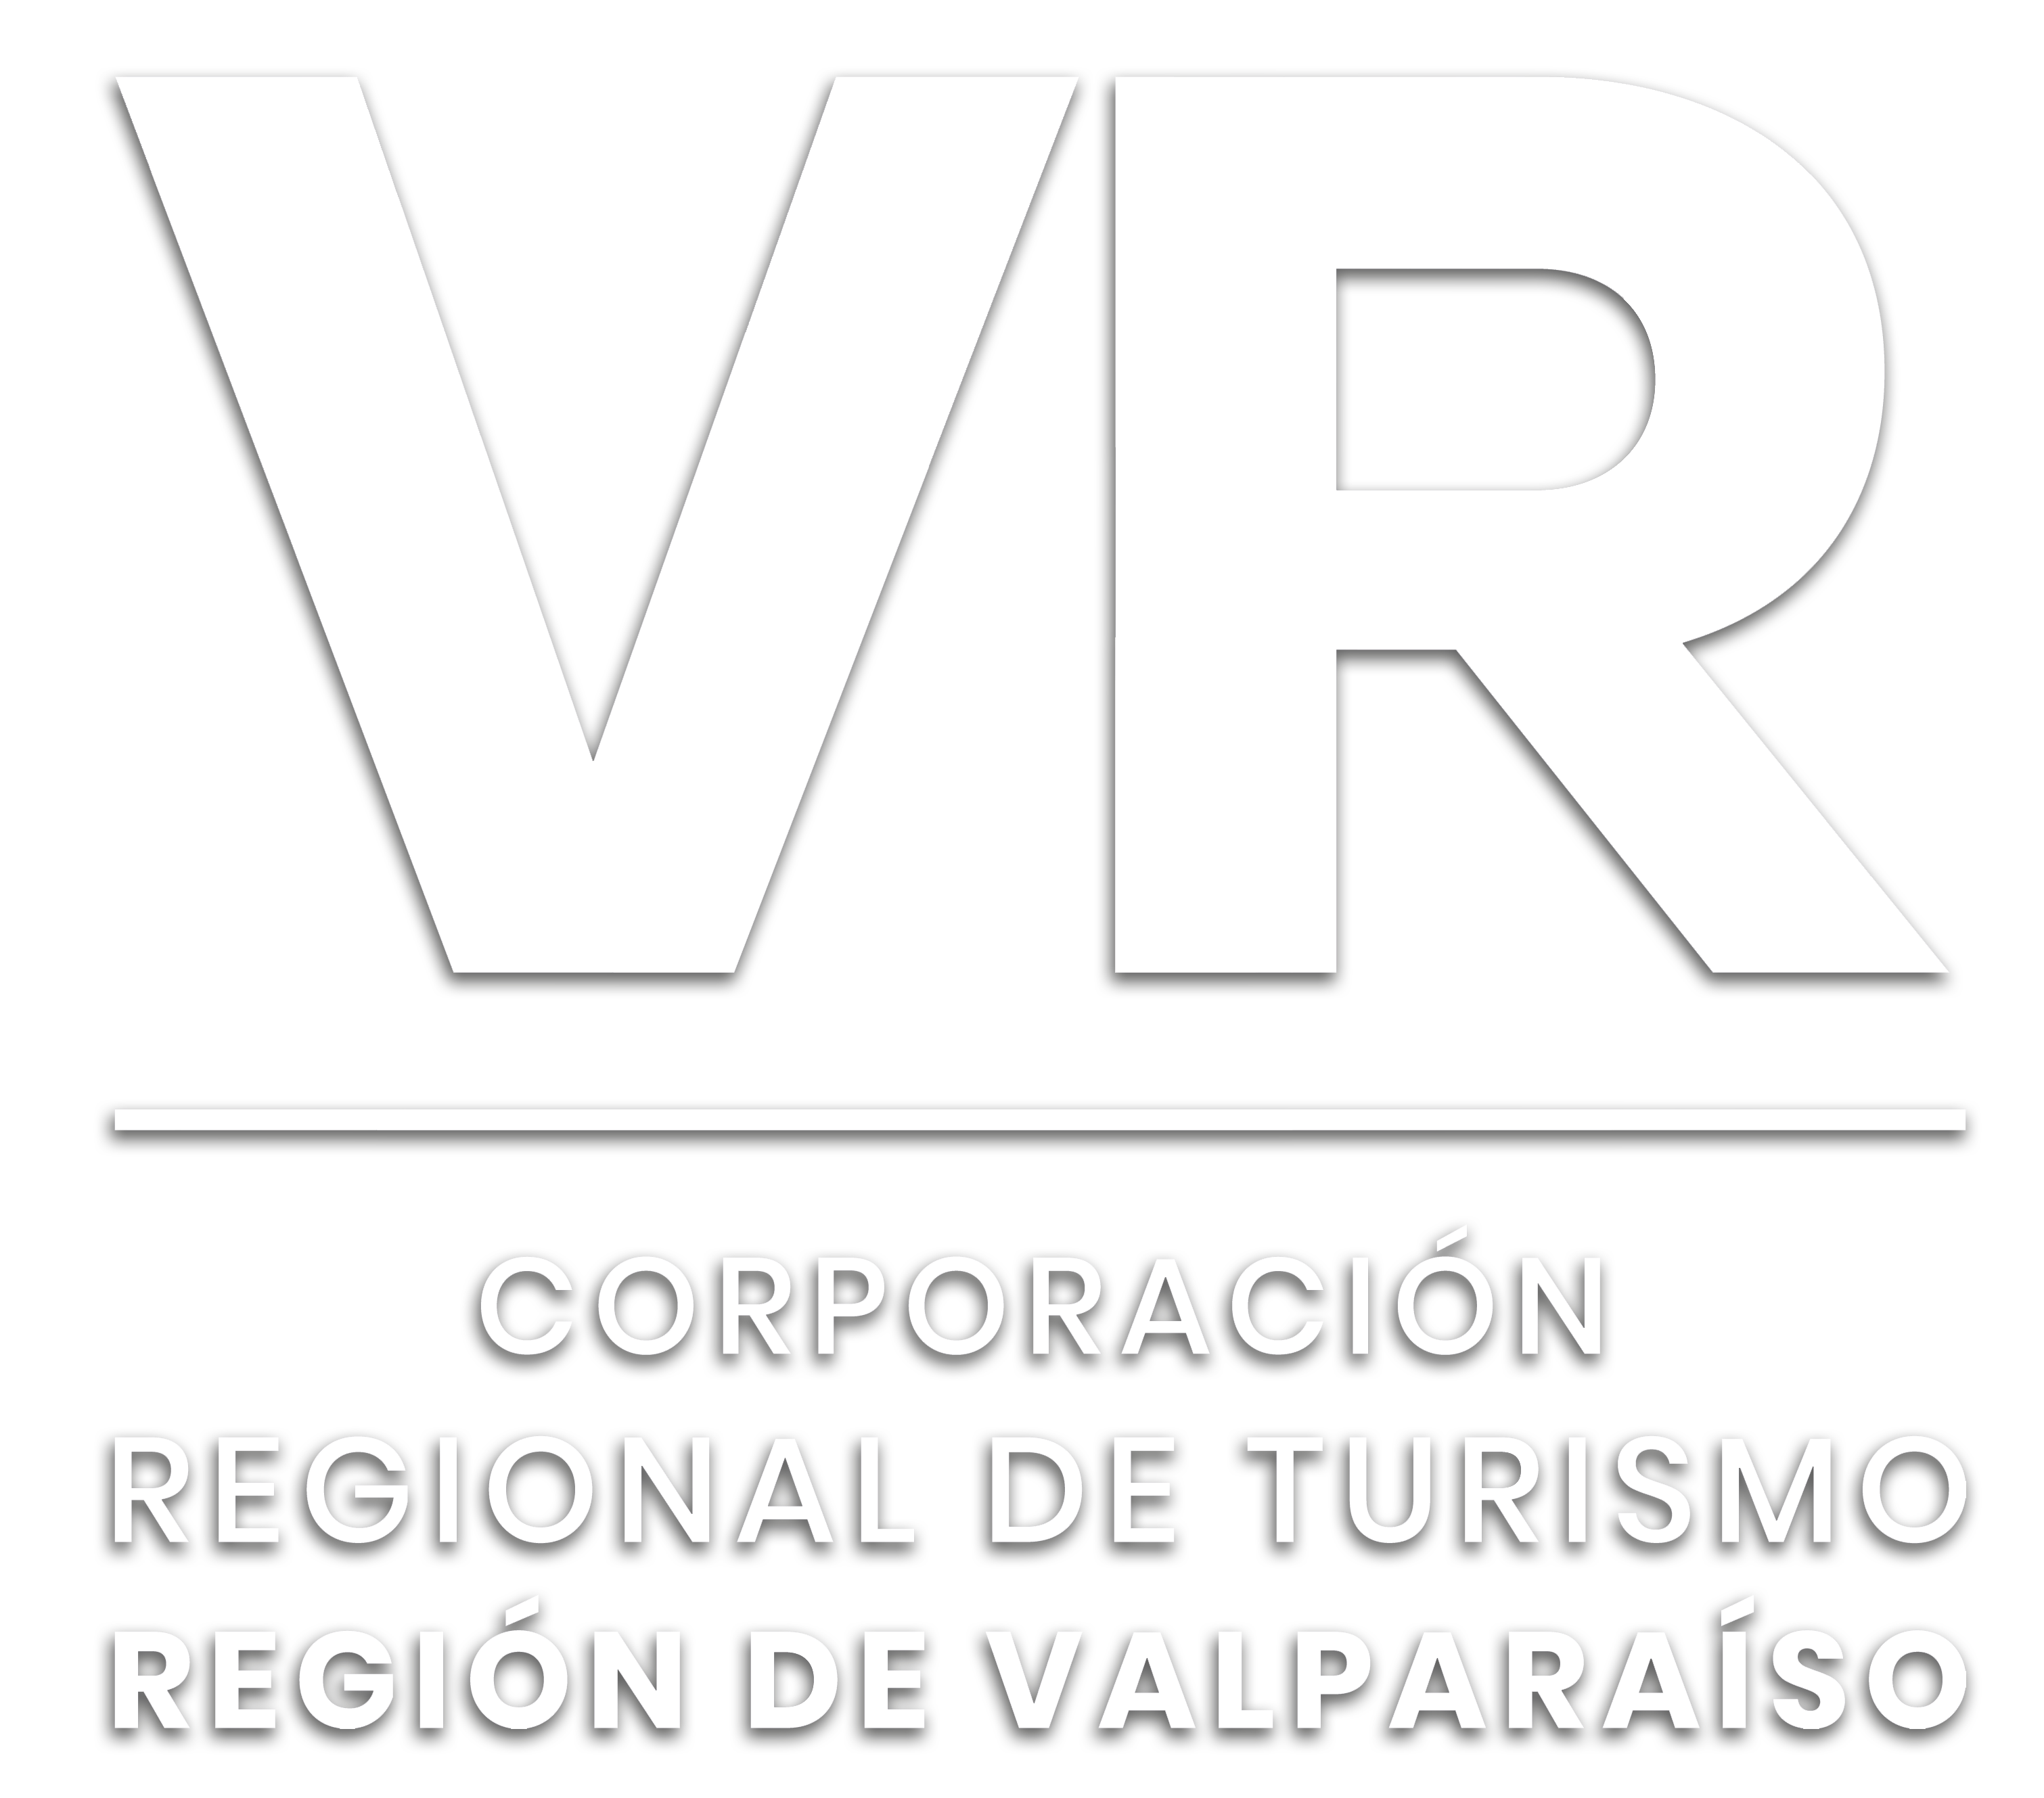 Banco Audiovisual de la Corporación Regional de turismo de Valparaíso